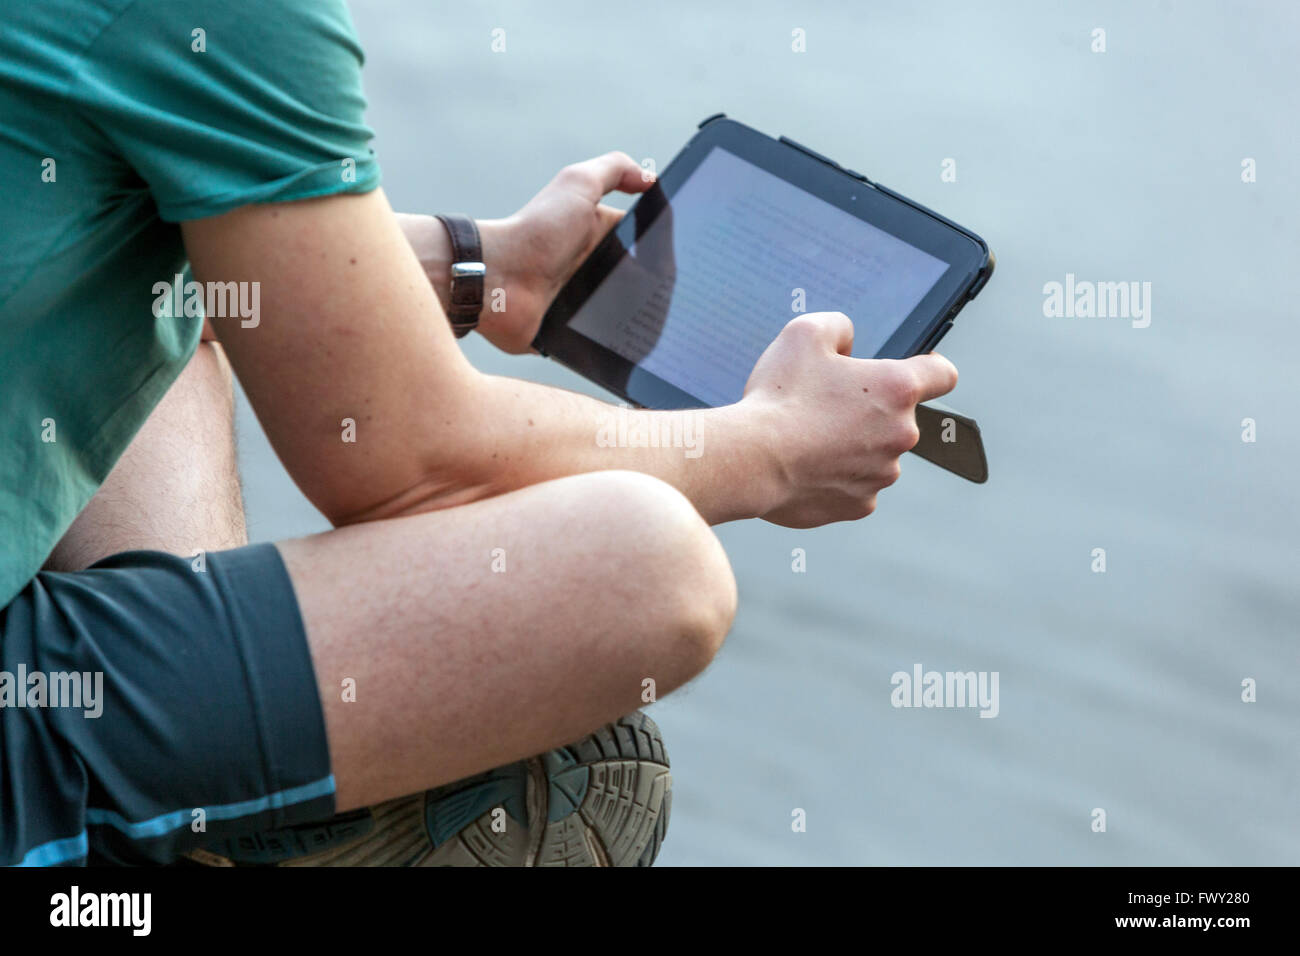 Hombre mirando un tablet digital fuera de la vista posterior, modernos dispositivos digitales Foto de stock